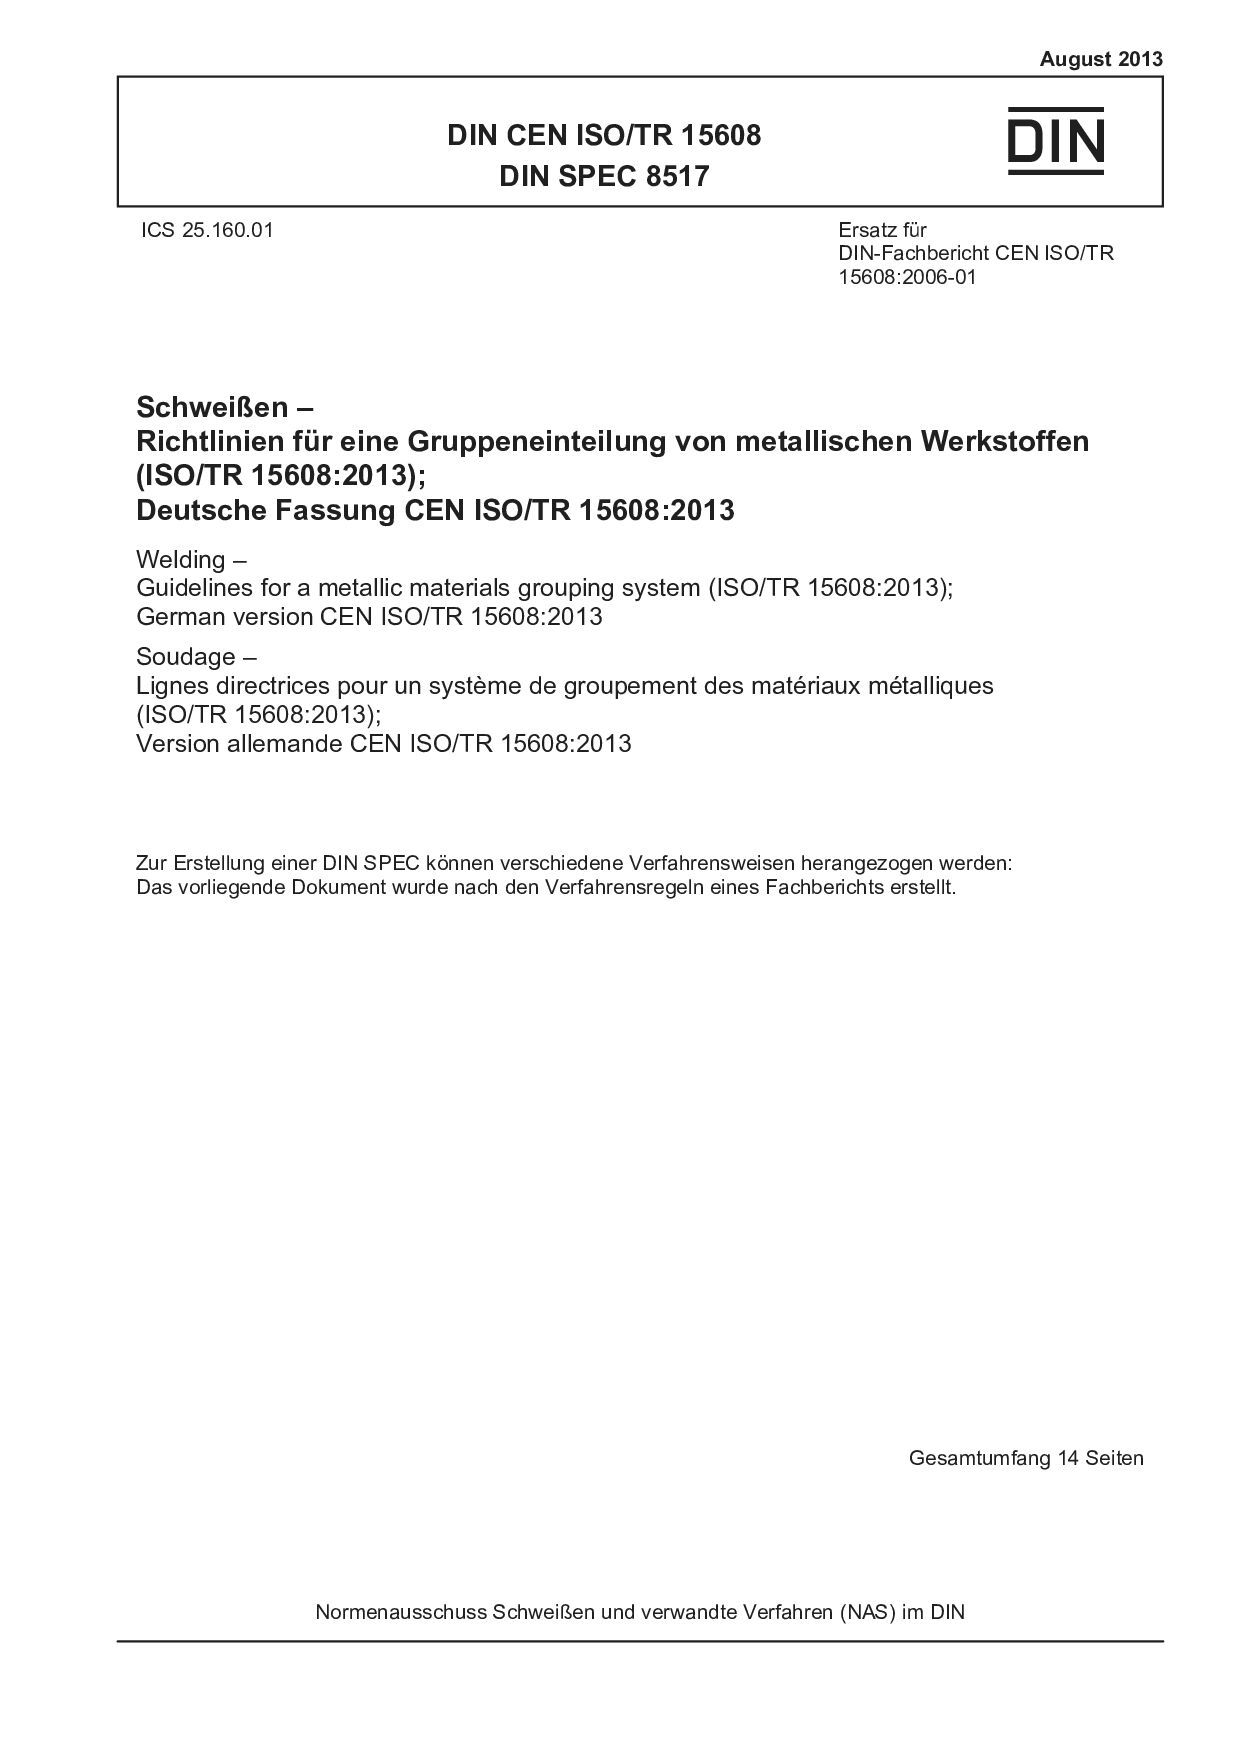 DIN CEN ISO/TR 15608:2013封面图